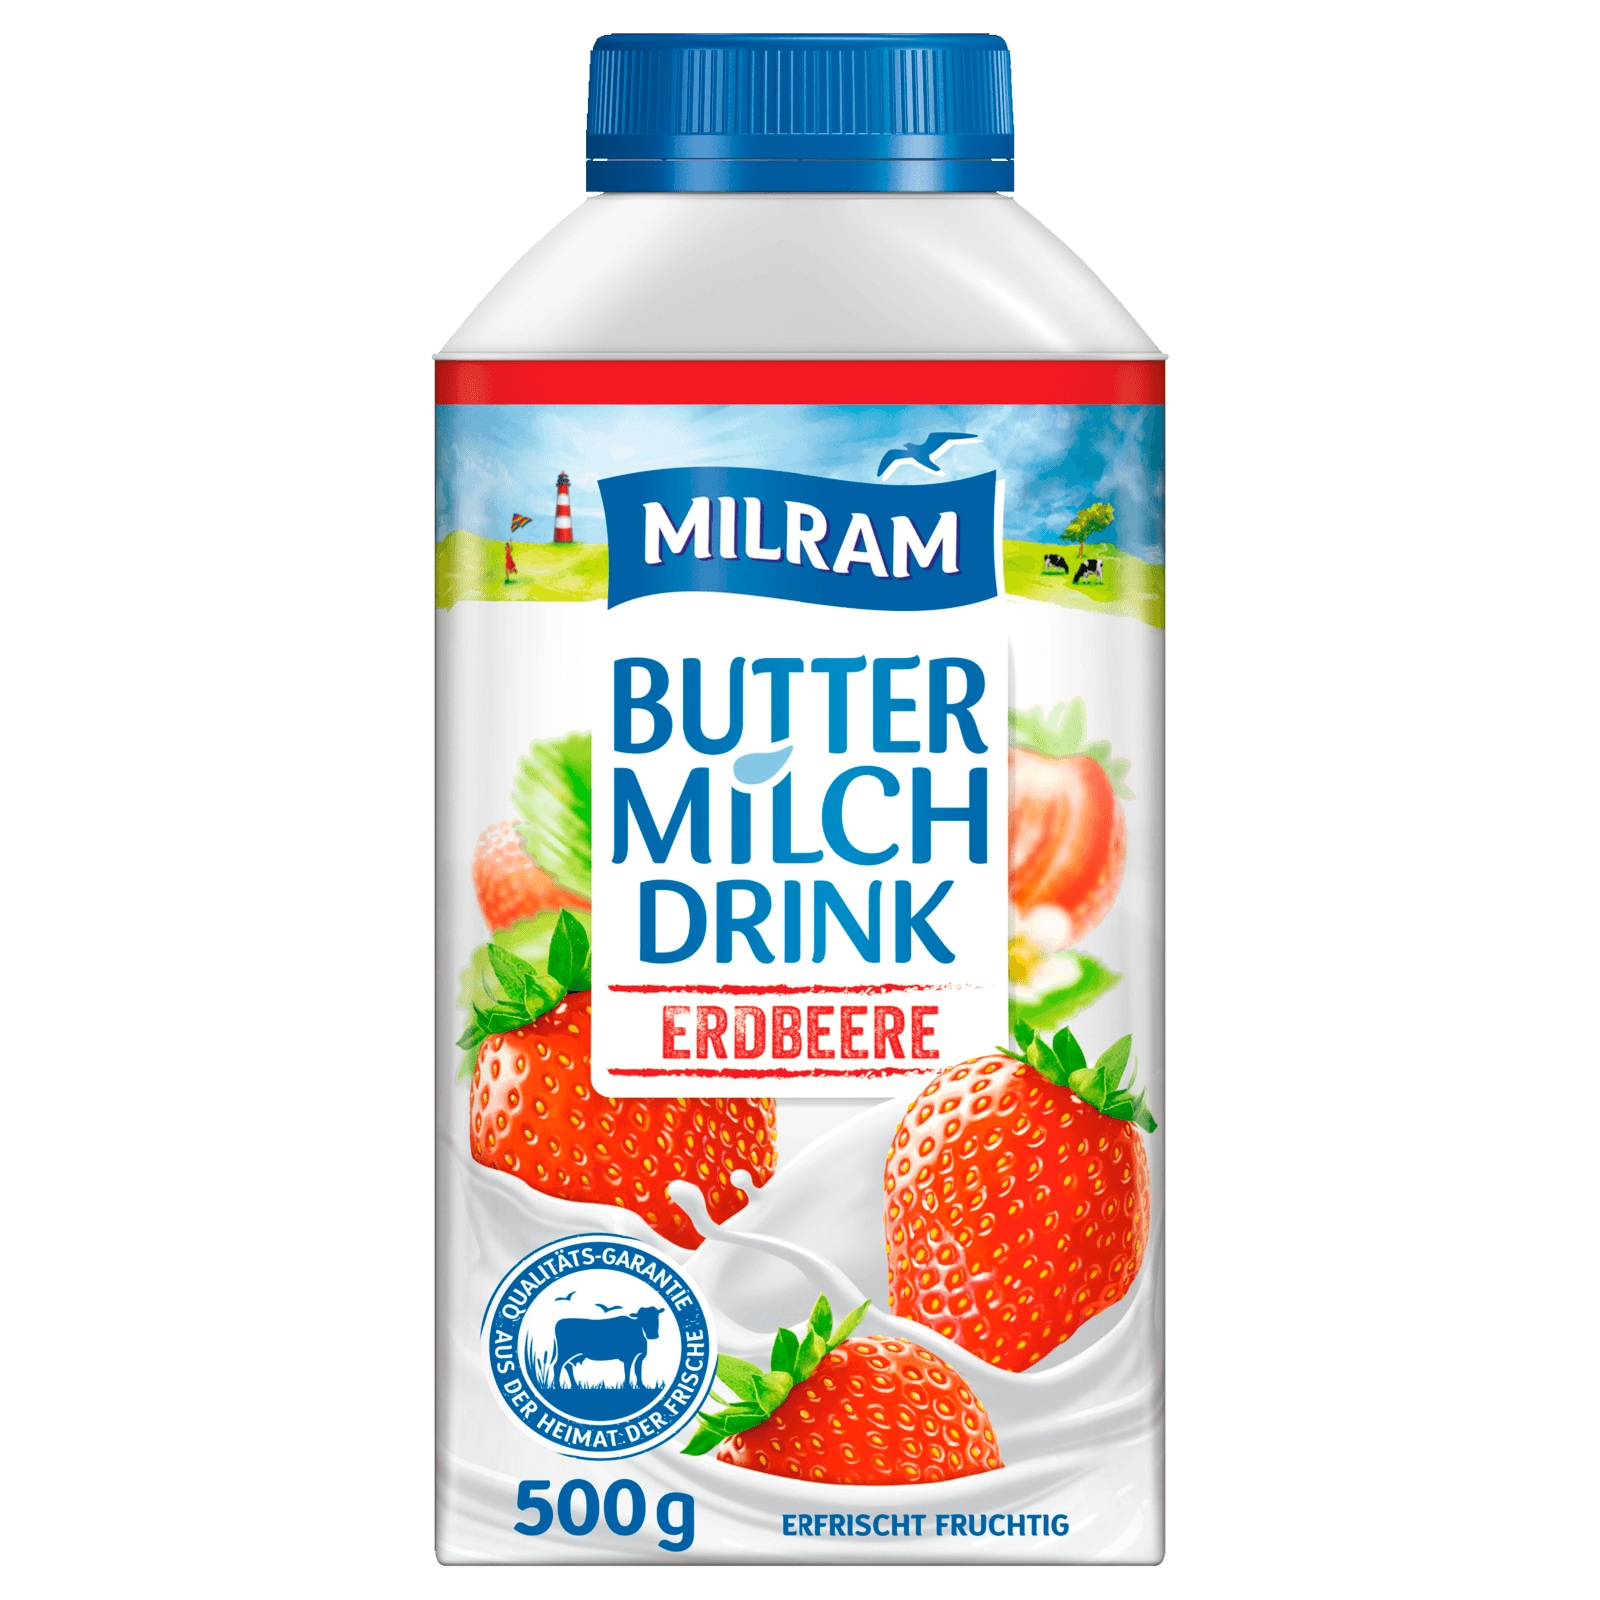 Milram Buttermilch Drink Erdbeere 500g Bei Rewe Online Bestellen